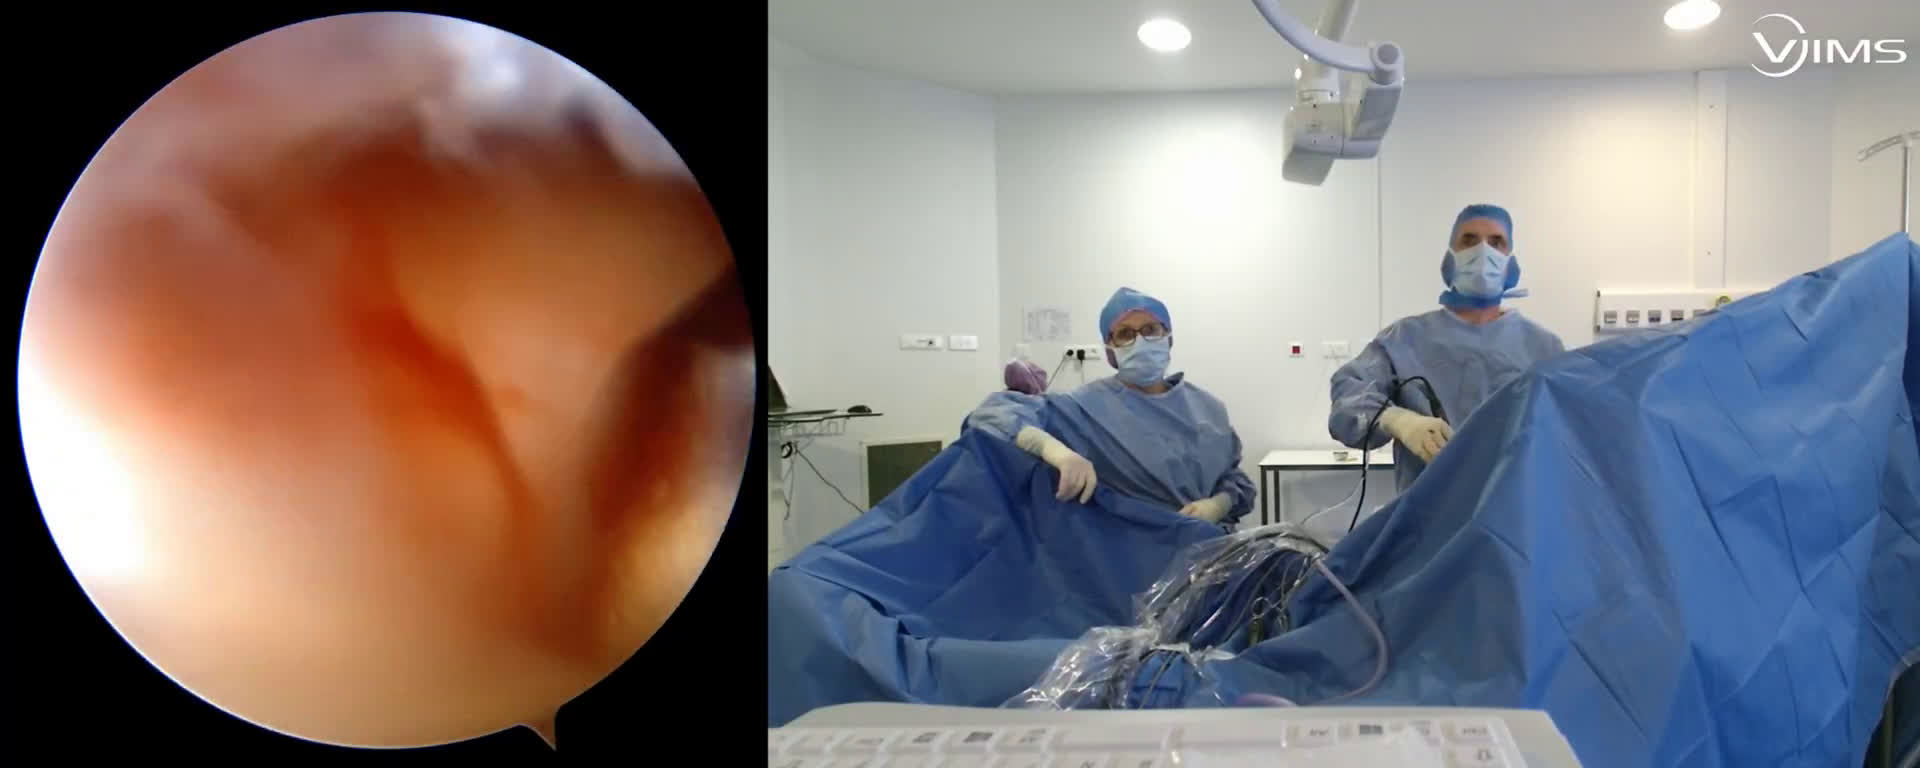 Vulgarisation de la technique de réparation arthroscopique d’une rupture isolée du supra épineux de l’épaule (Dr. Joudet)